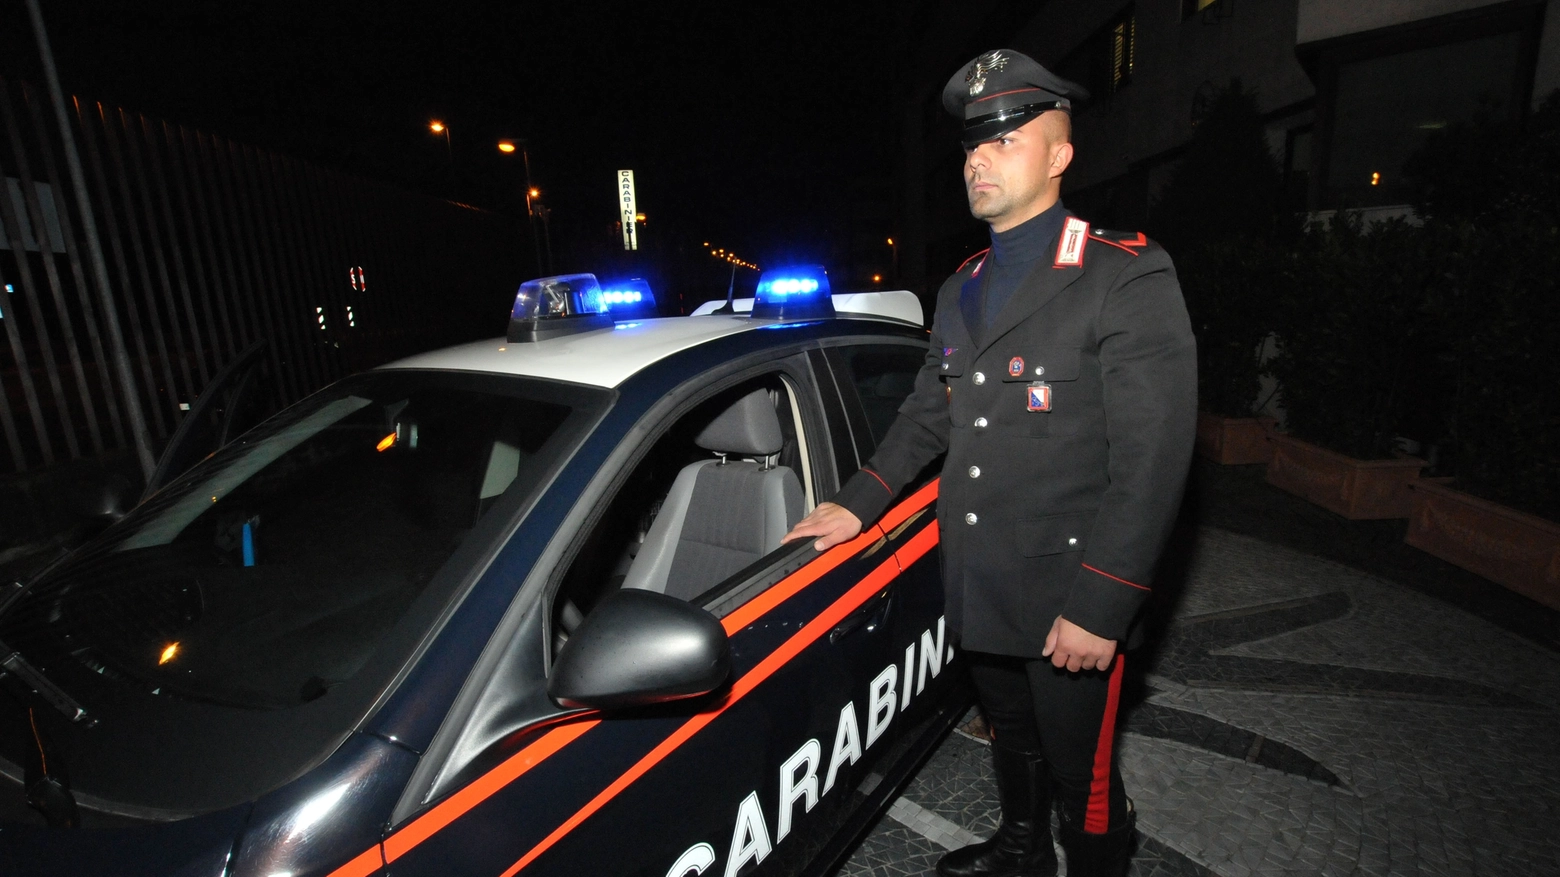 I carabinieri